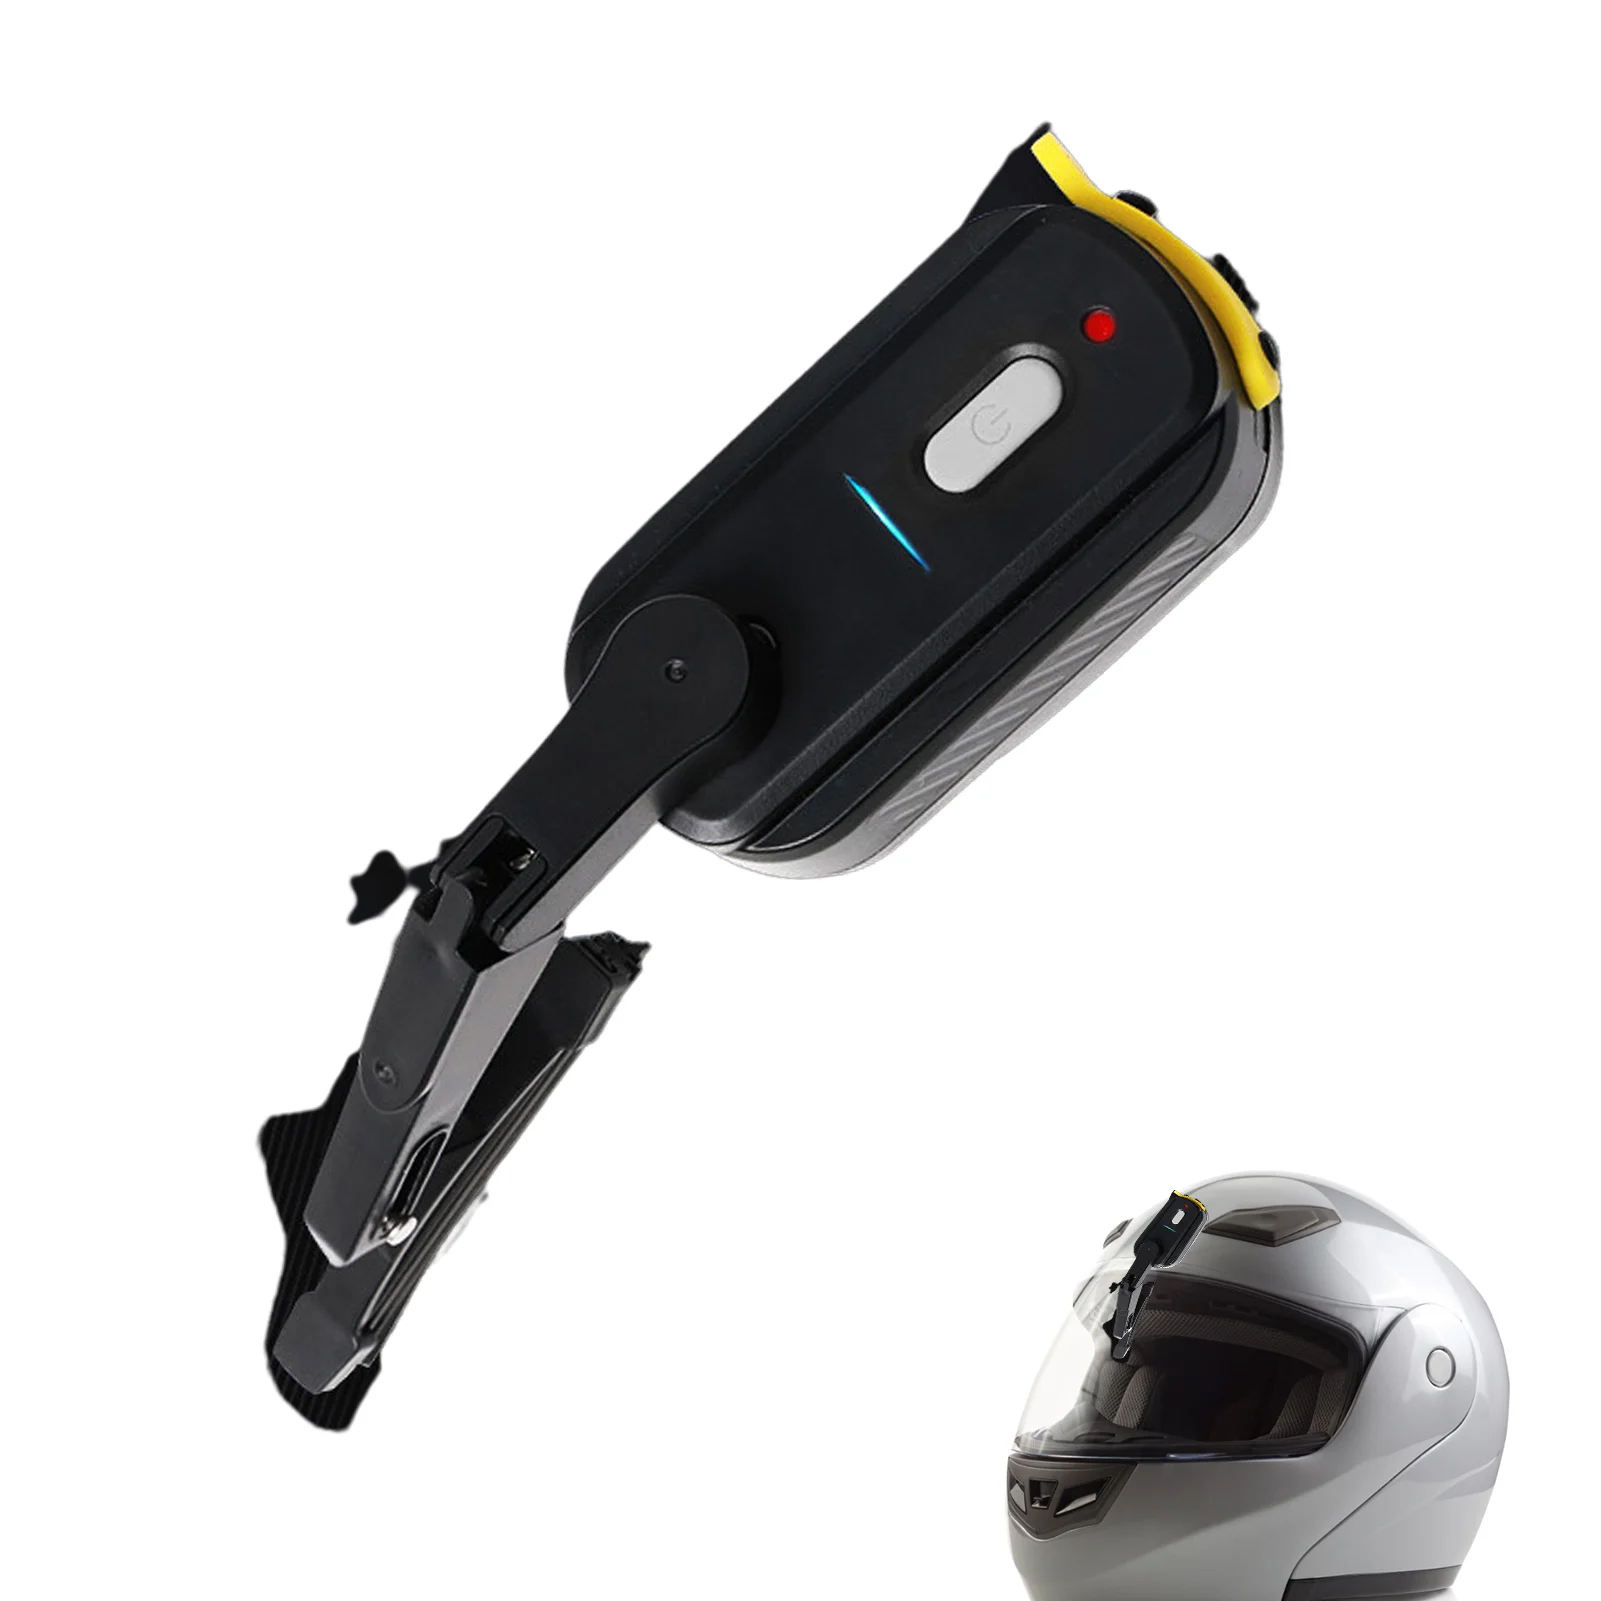 Limpiaparabrisas eléctrico para motocicleta, accesorios para casco, resistente al agua, con visera solar